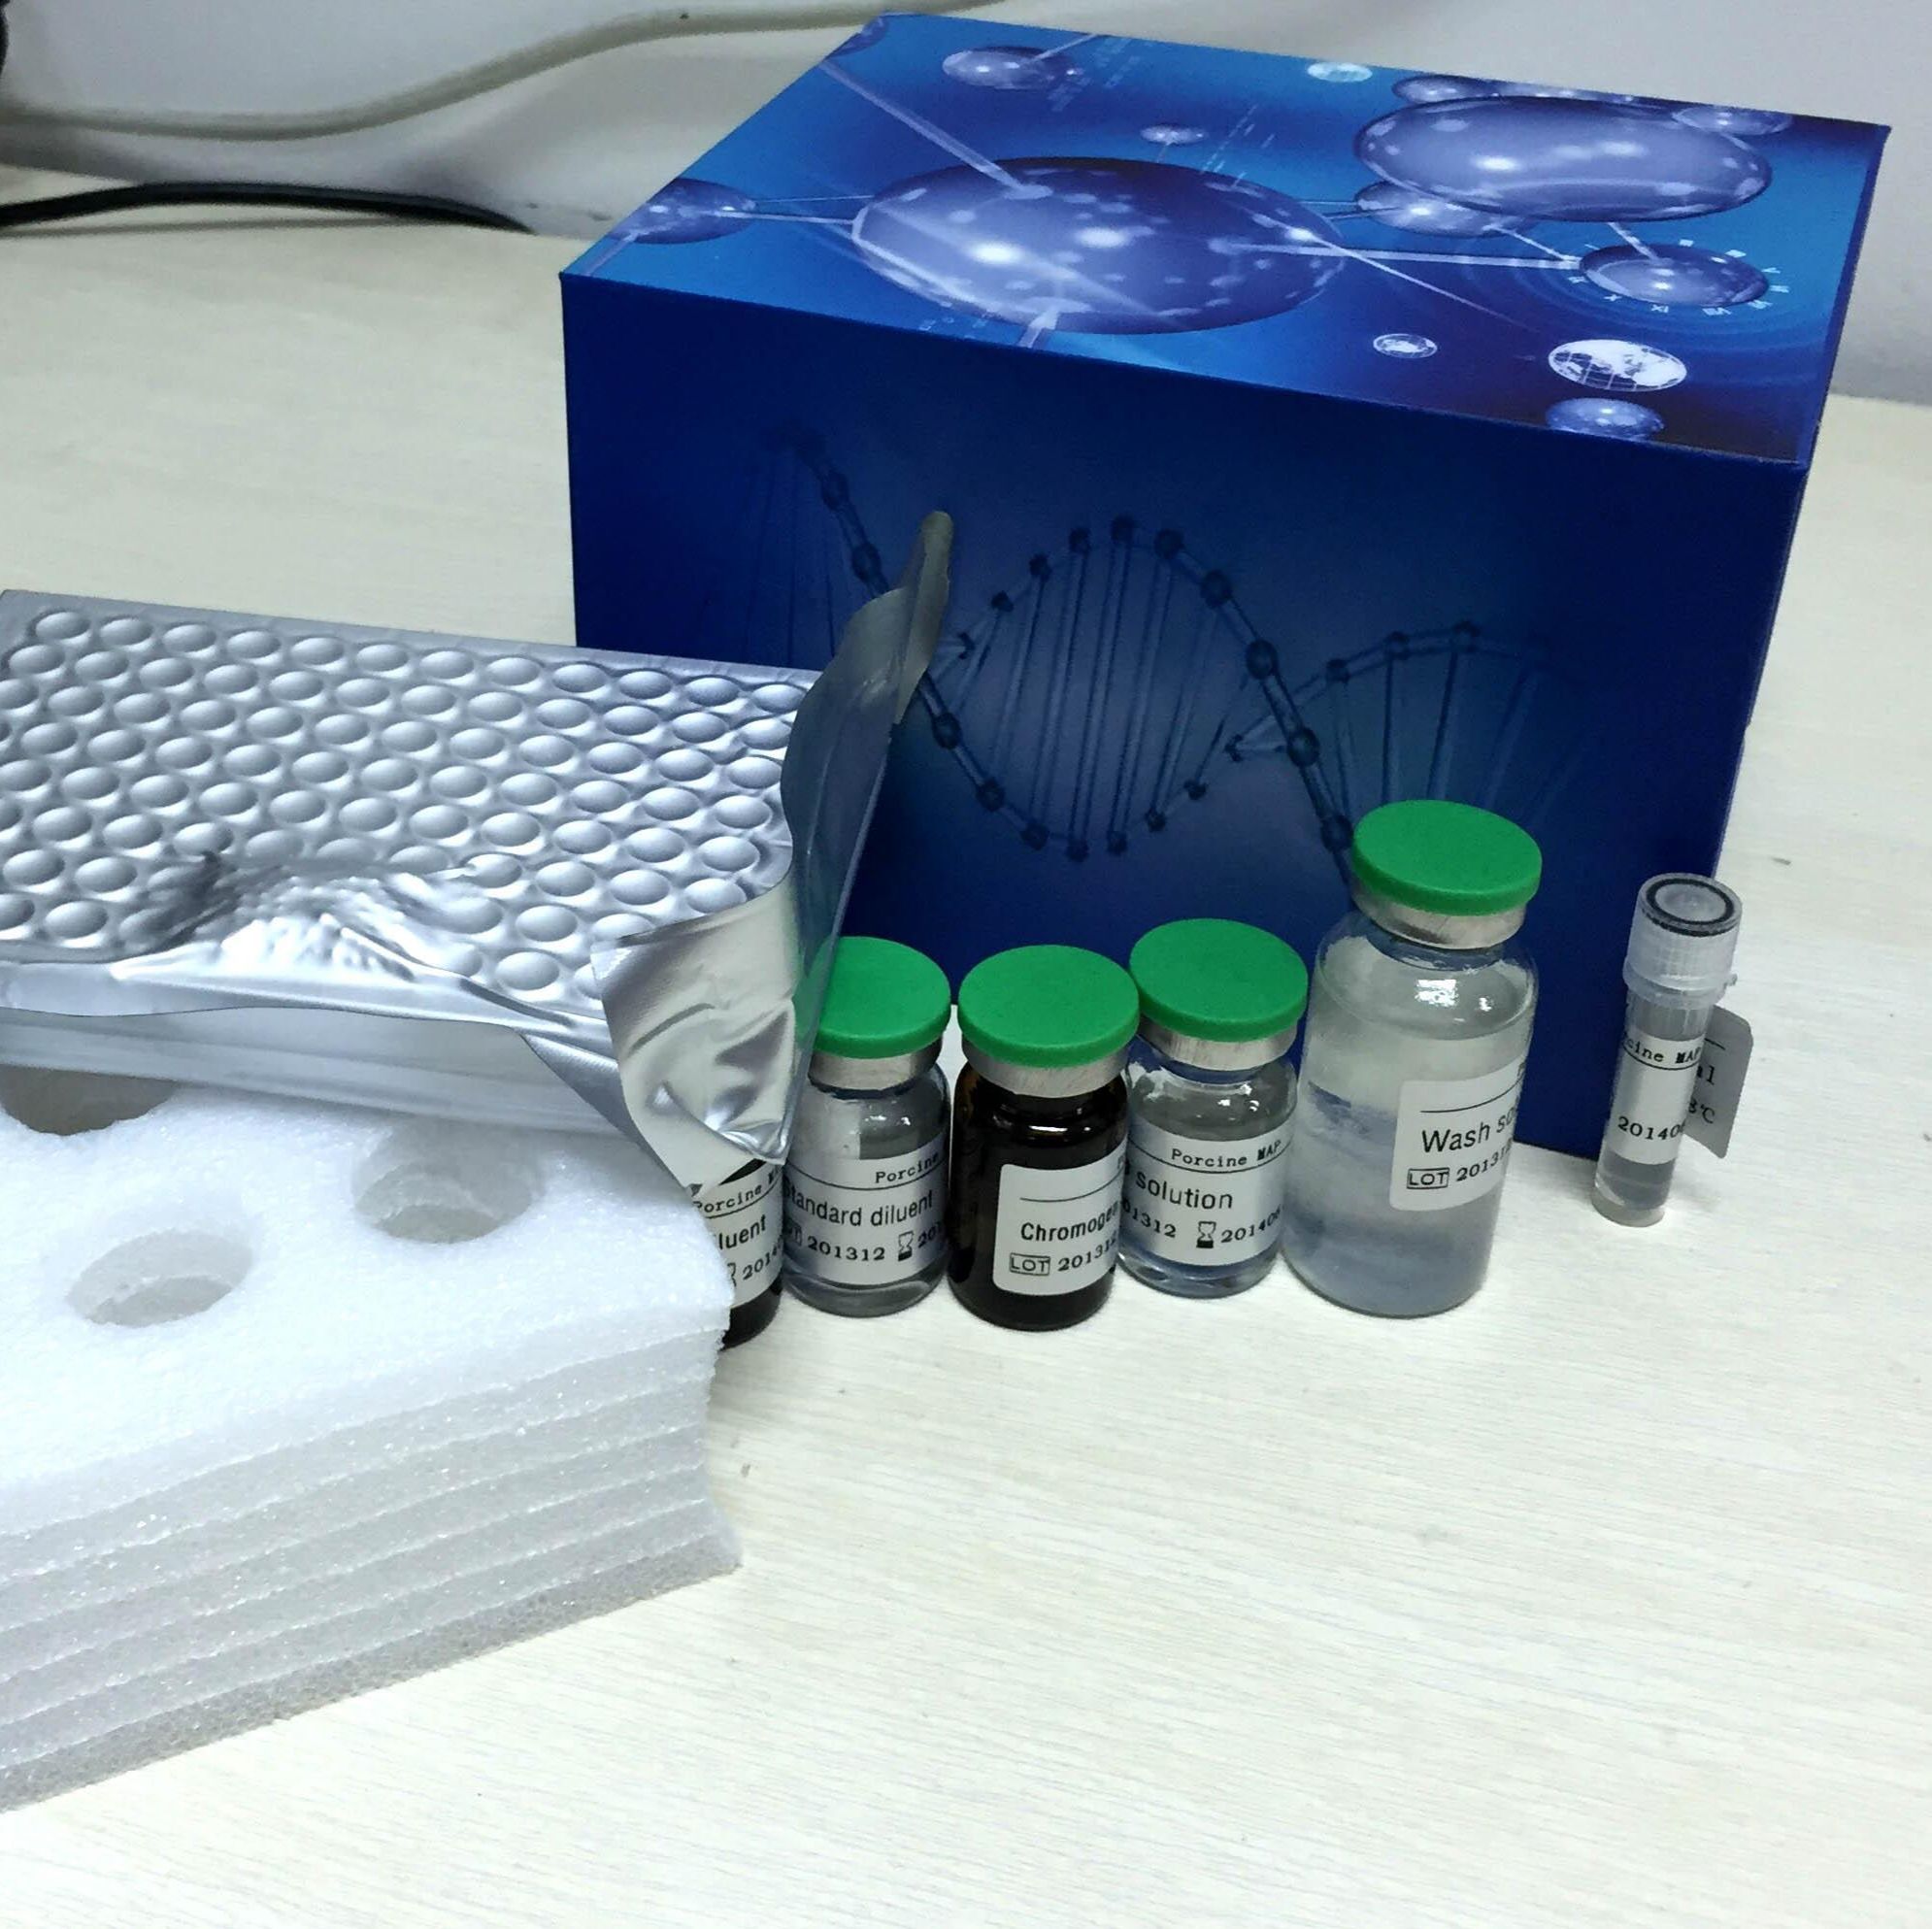 人表面膜免疫球蛋白D(mIgD)ELISA试剂盒